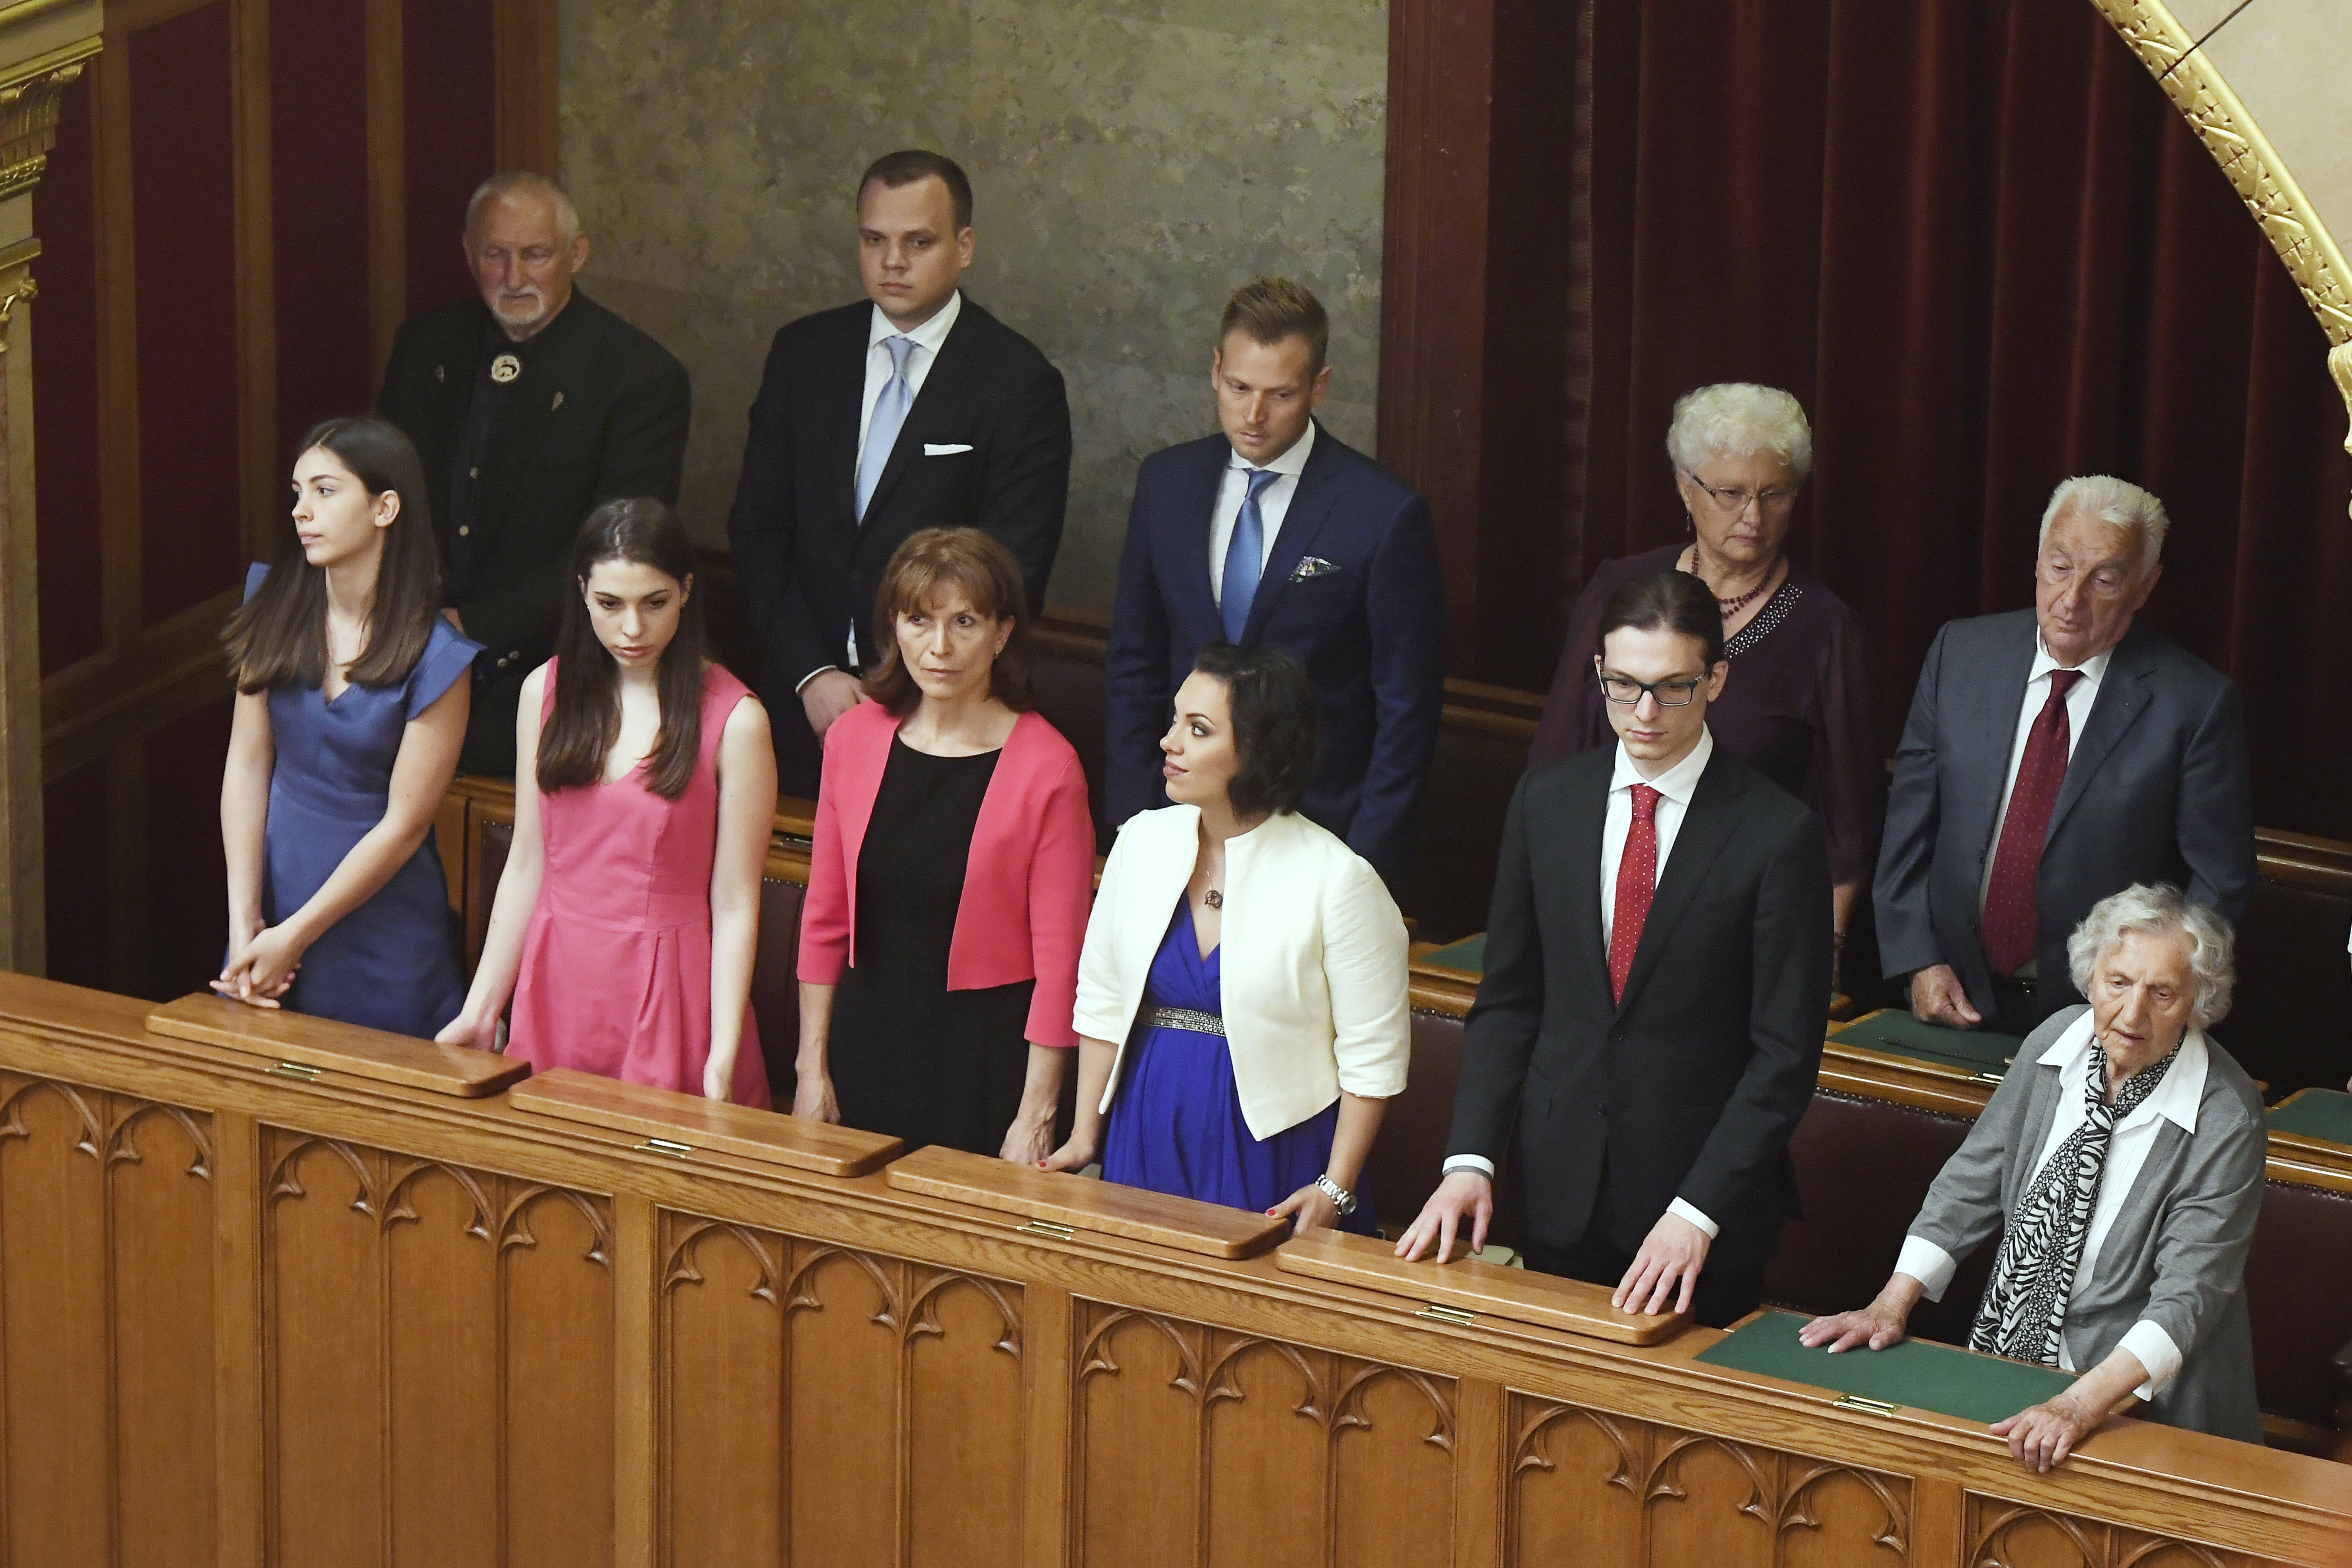 Orbán Viktor felesége, Lévai Anikó (első sor, b3), lányai, Flóra, Róza és Ráhel (első sor b, b2, b4), fia, Gáspár (első sor, j2), édesapja, Orbán Győző, édesanyja, Orbán Győzőné, és veje, Tiborc István (második sor, j-b) 2018. május 10-én az Országgyűlés plenáris ülésén, ahol újra miniszterelnökké választották Orbán Viktort.